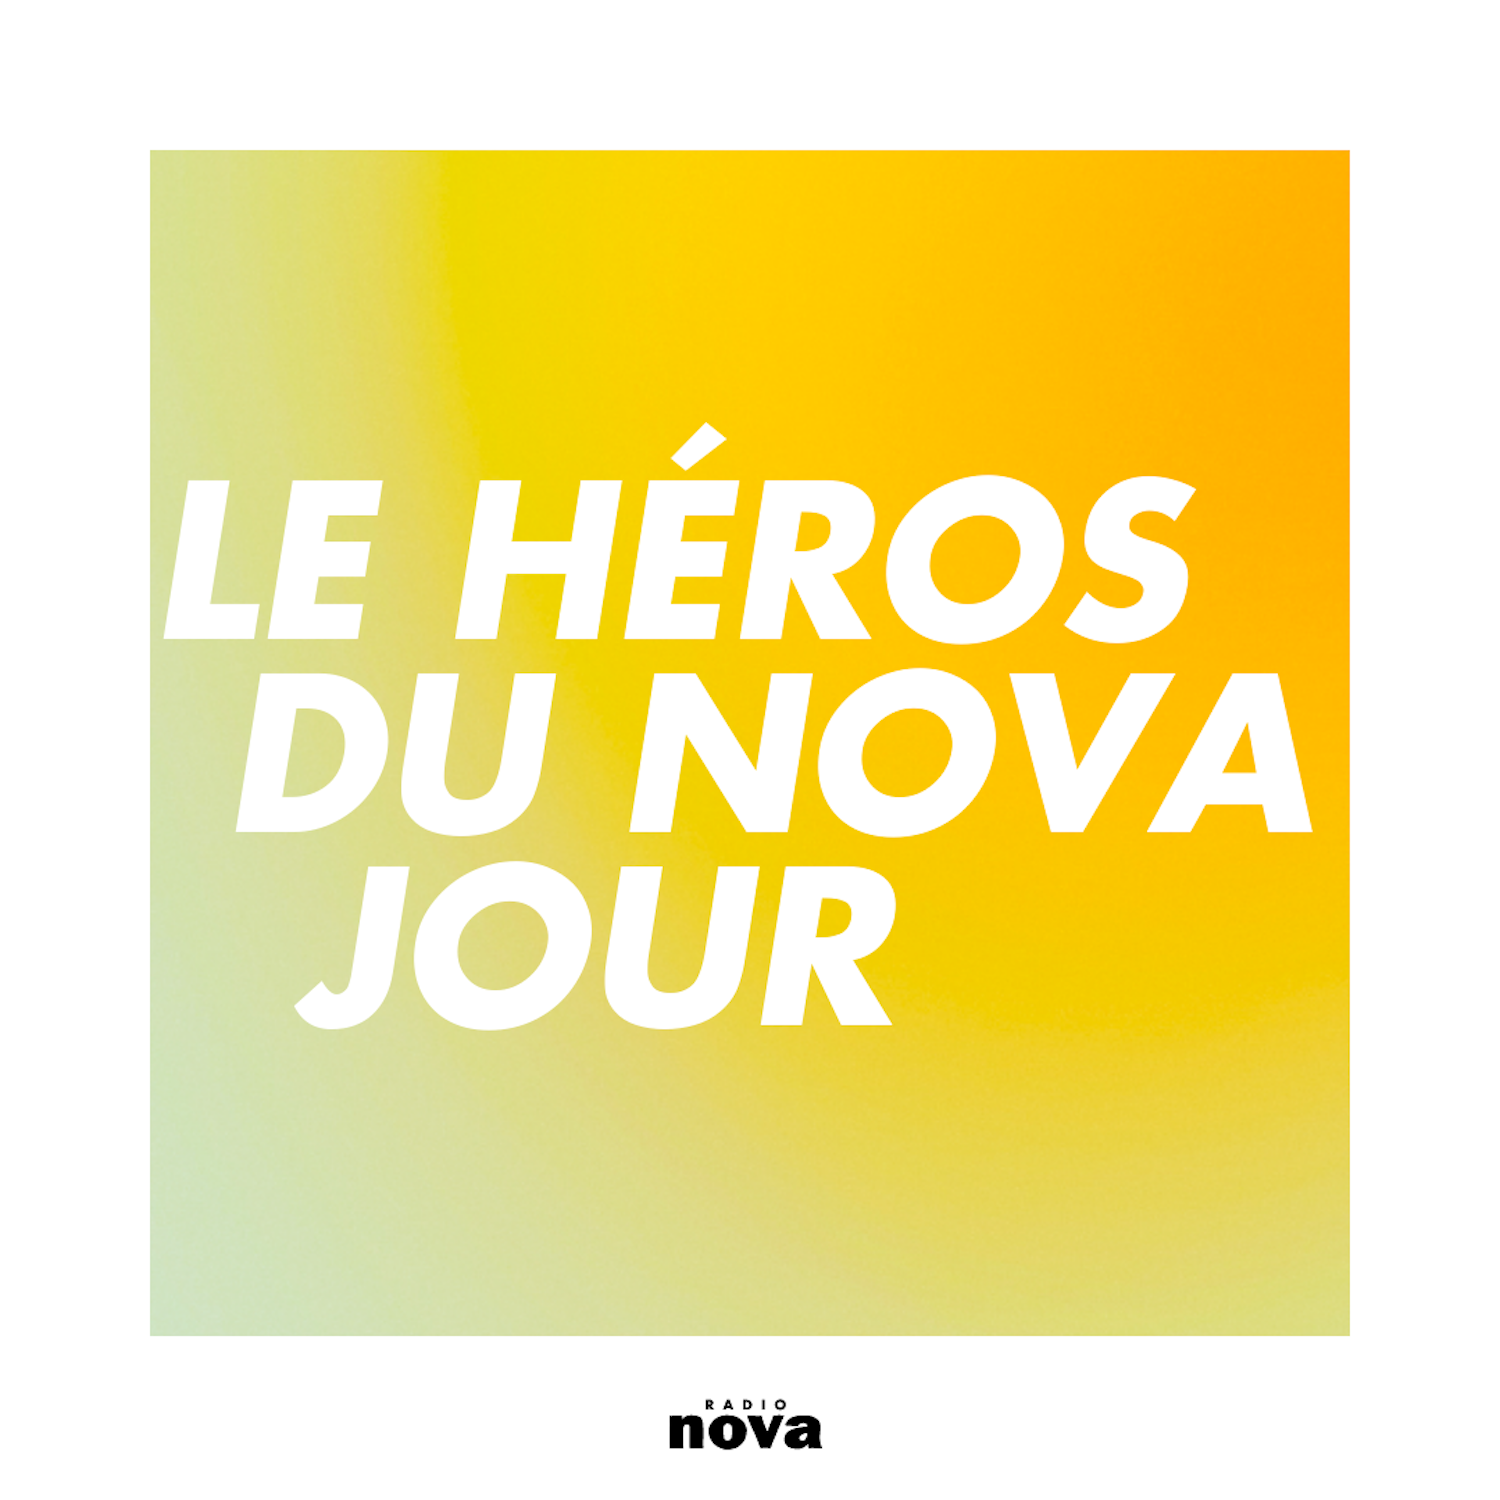 Le Héros du Nova jour image